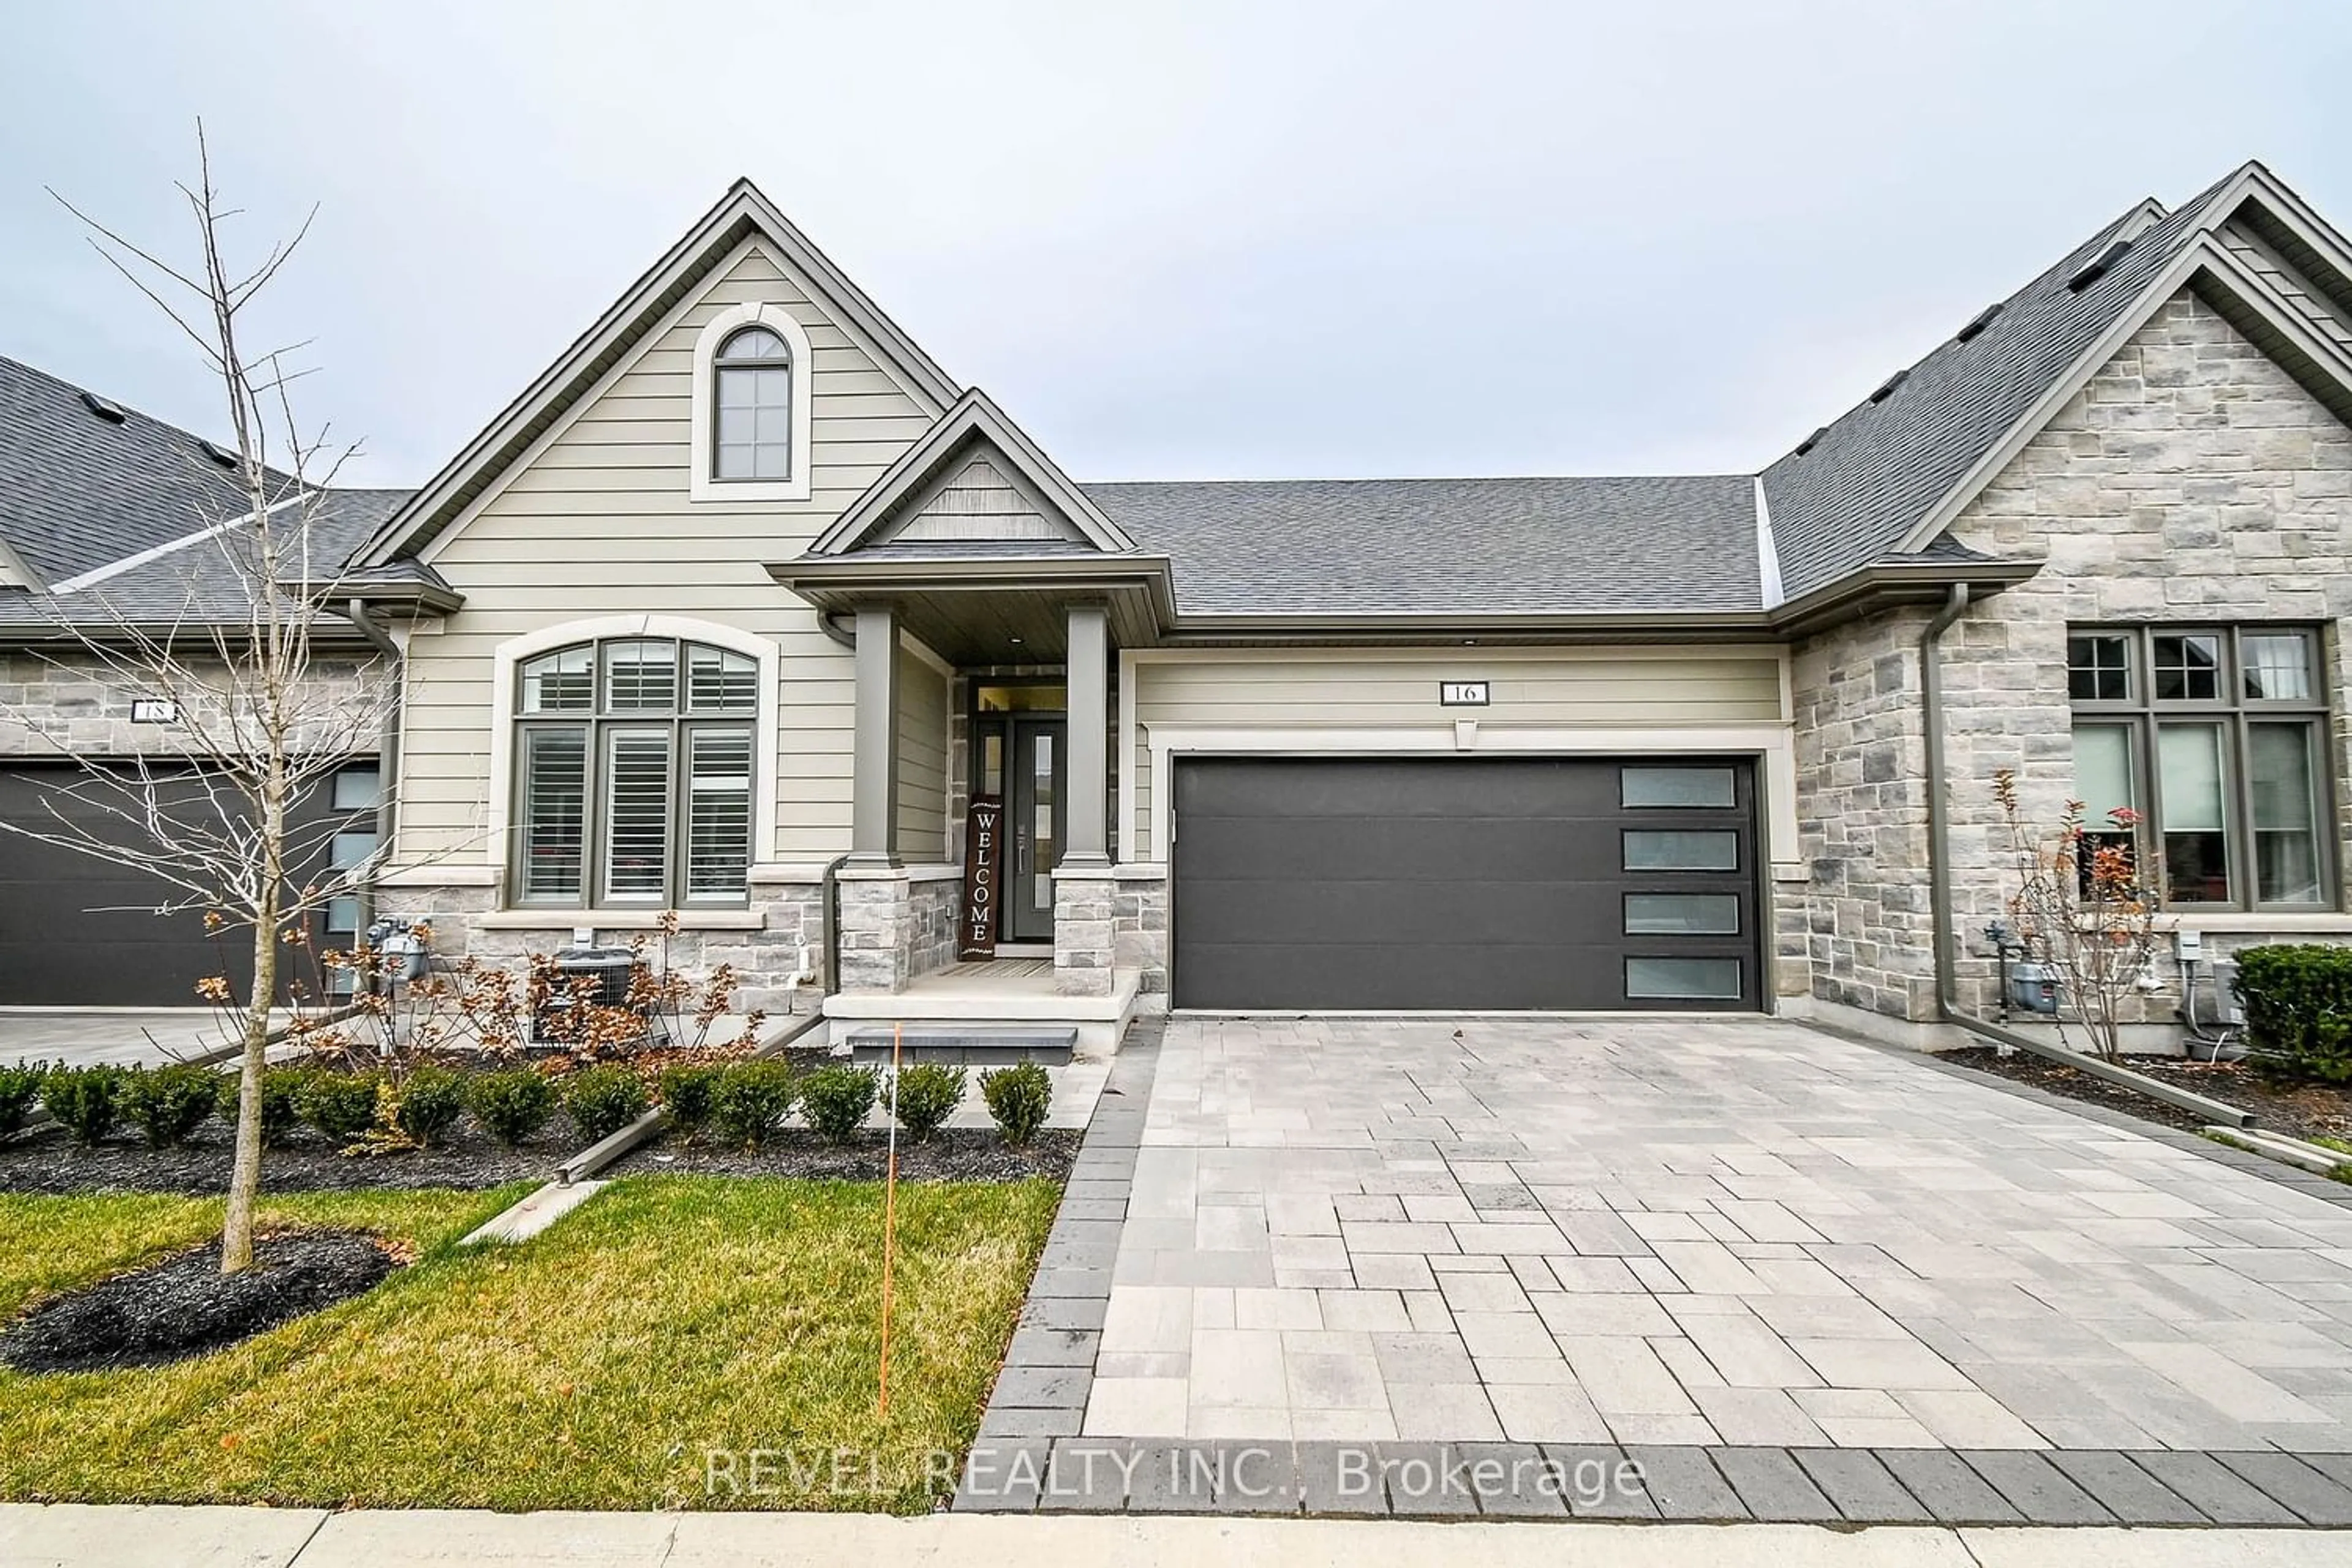 Home with brick exterior material for 154 Port Robinson Rd #16, Pelham Ontario L0S 1E6